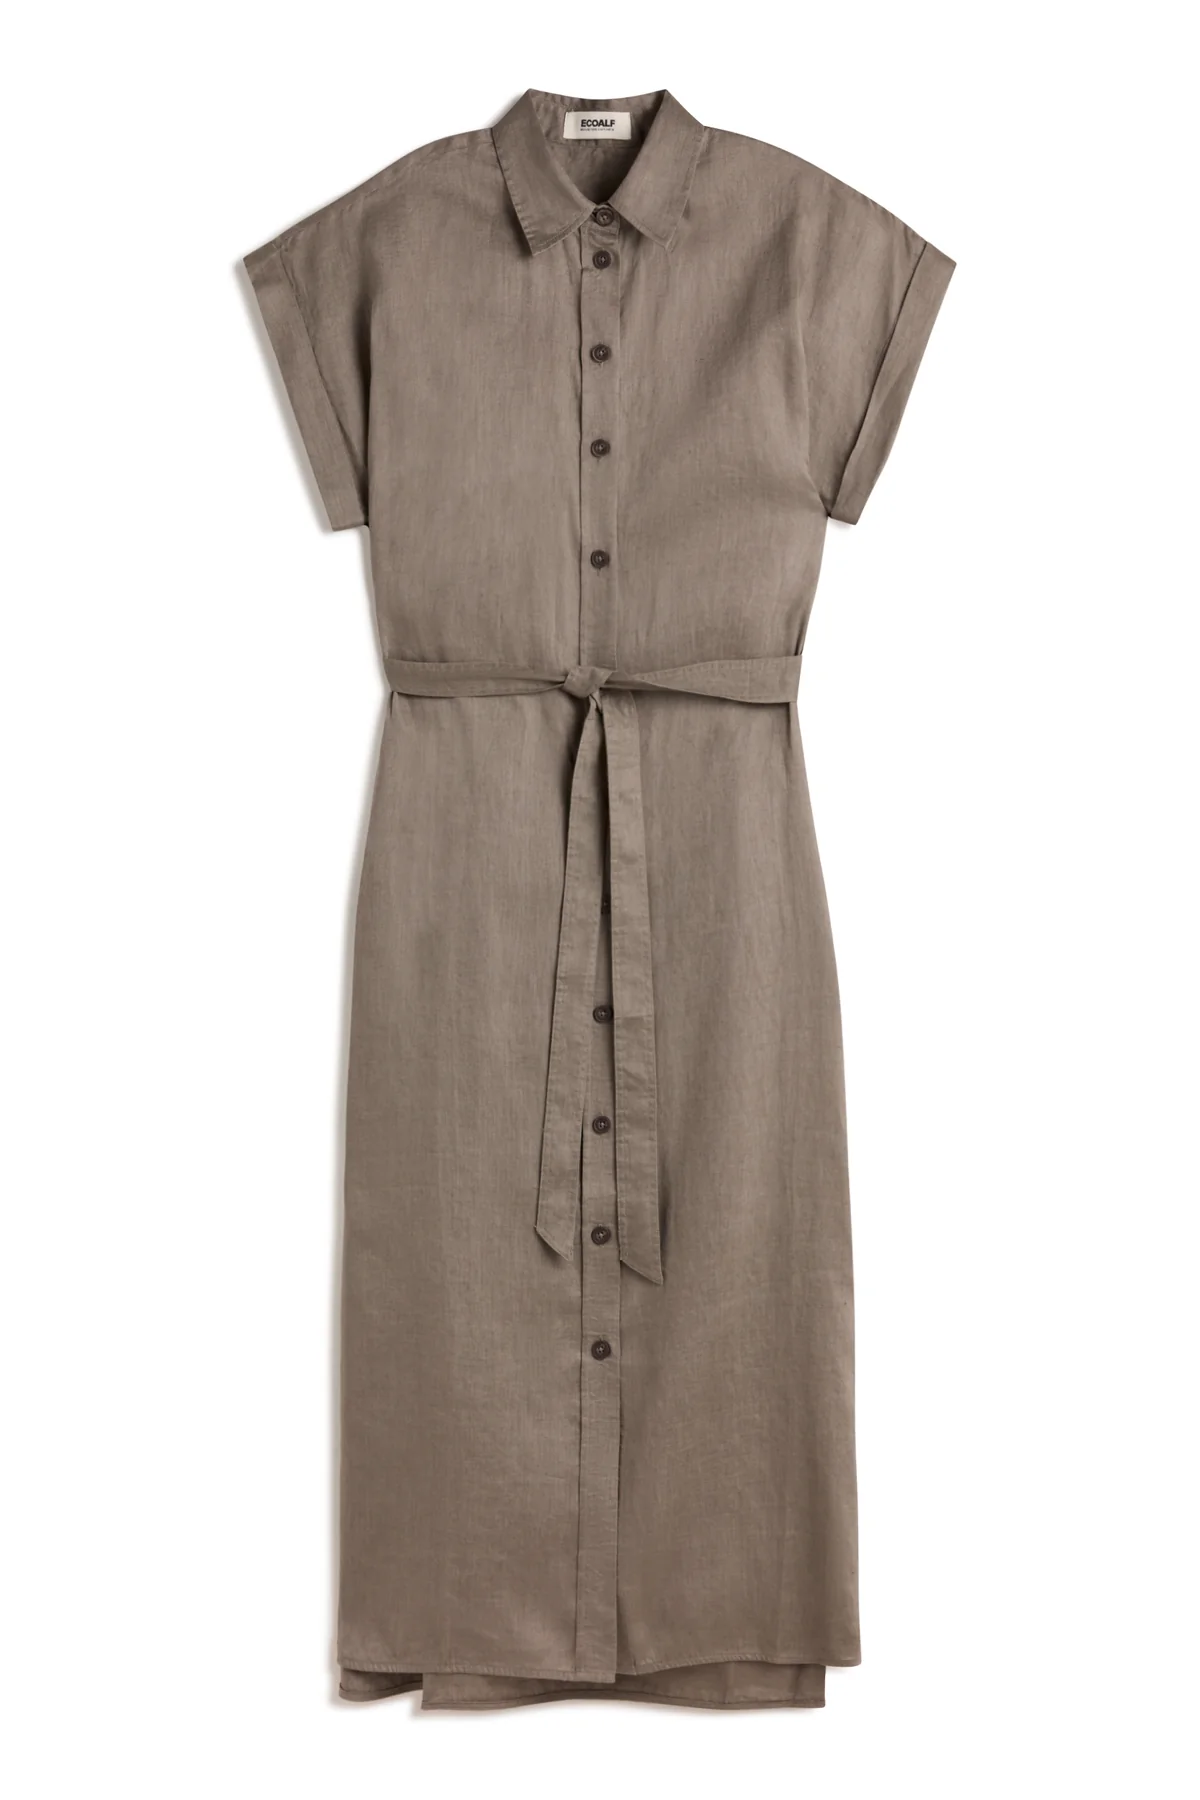 ECOALF vestido camisero en lino color caqui - 6